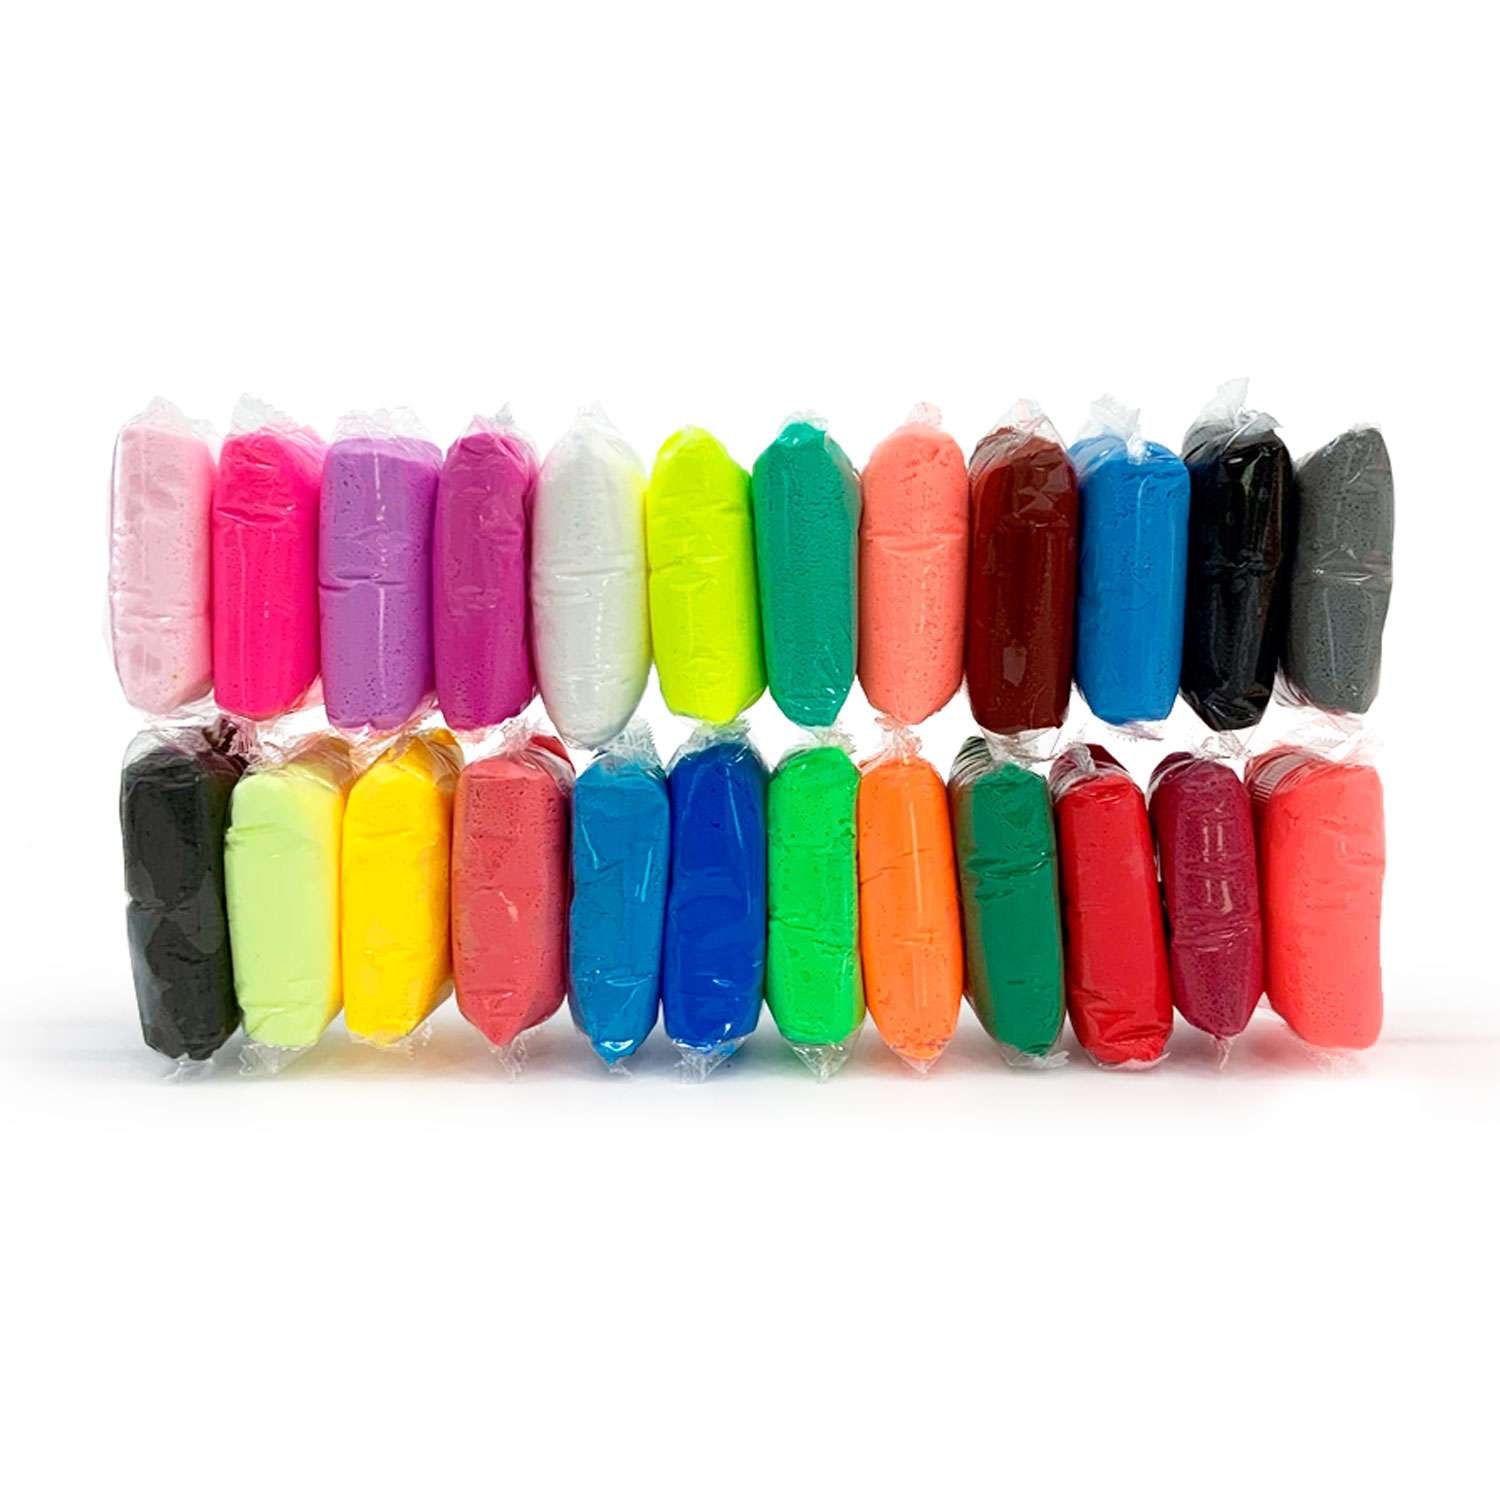 Воздушный пластилин Kiki масса для лепки в пакете 24 цвета - фото 2